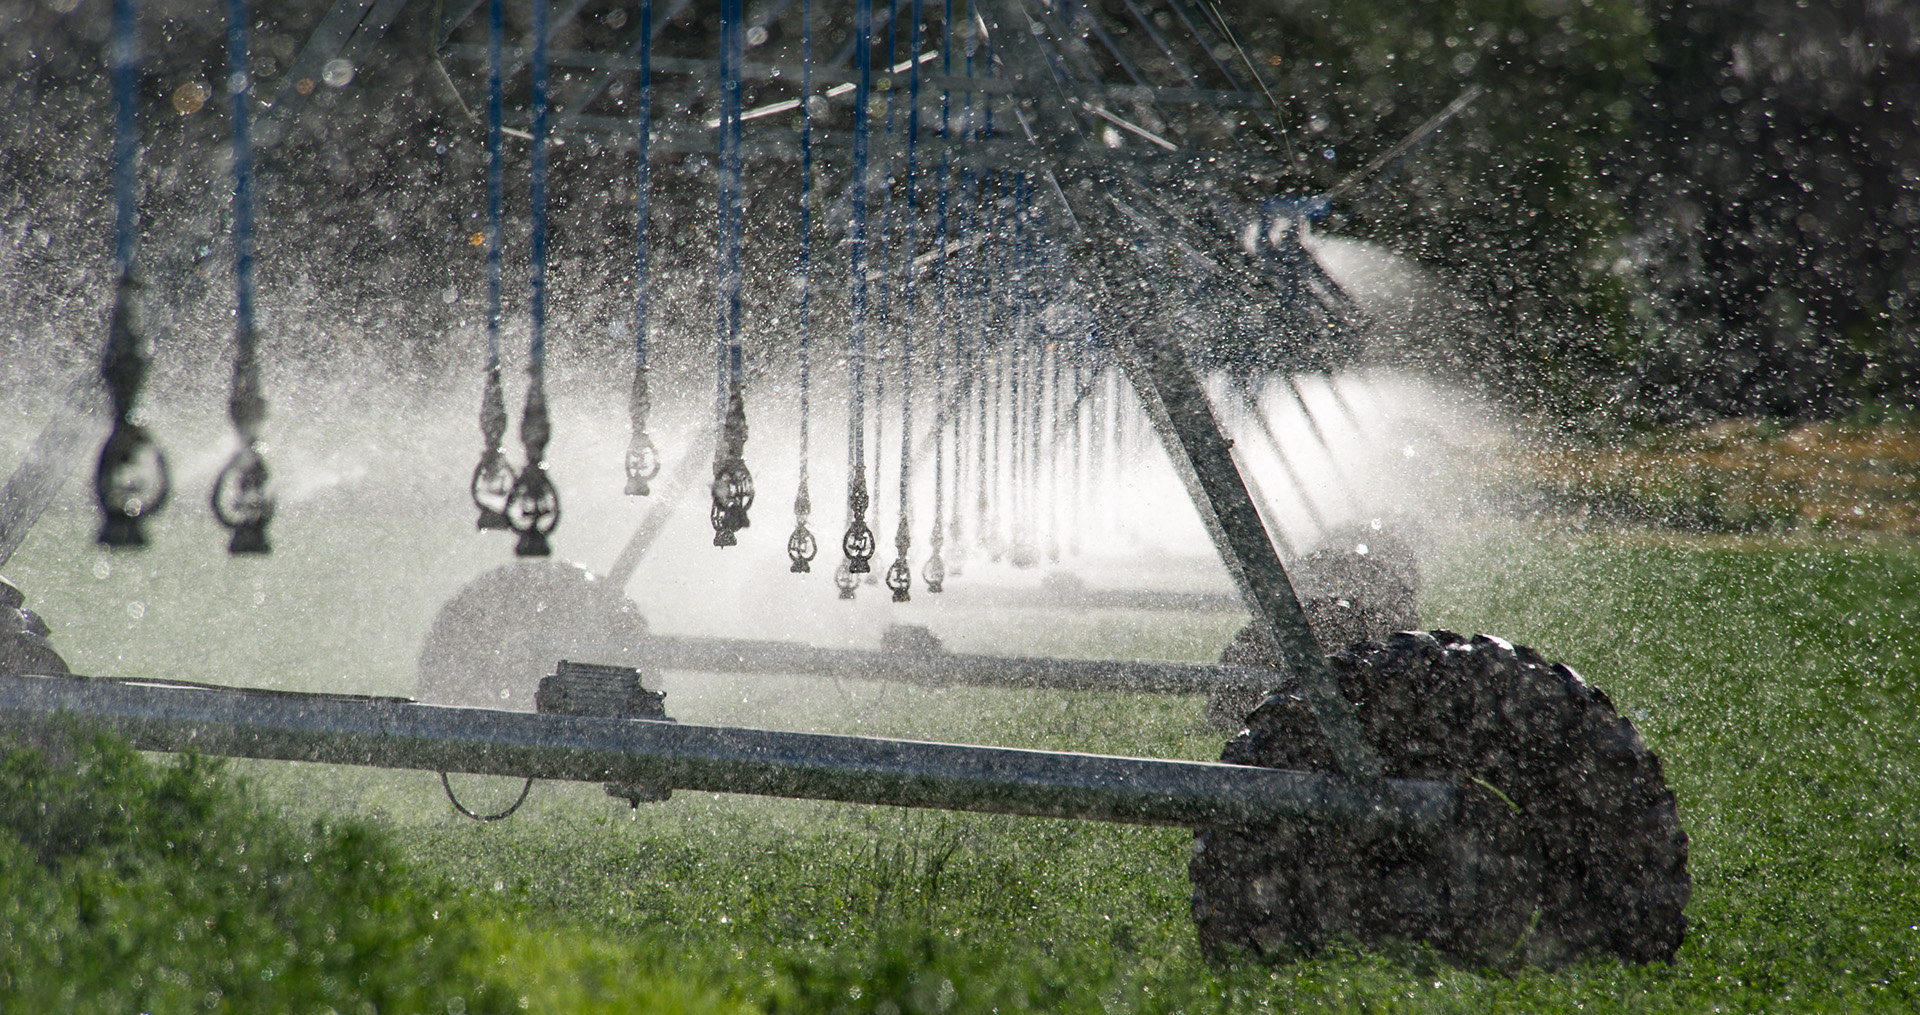 irrigation sprinklers watering crops